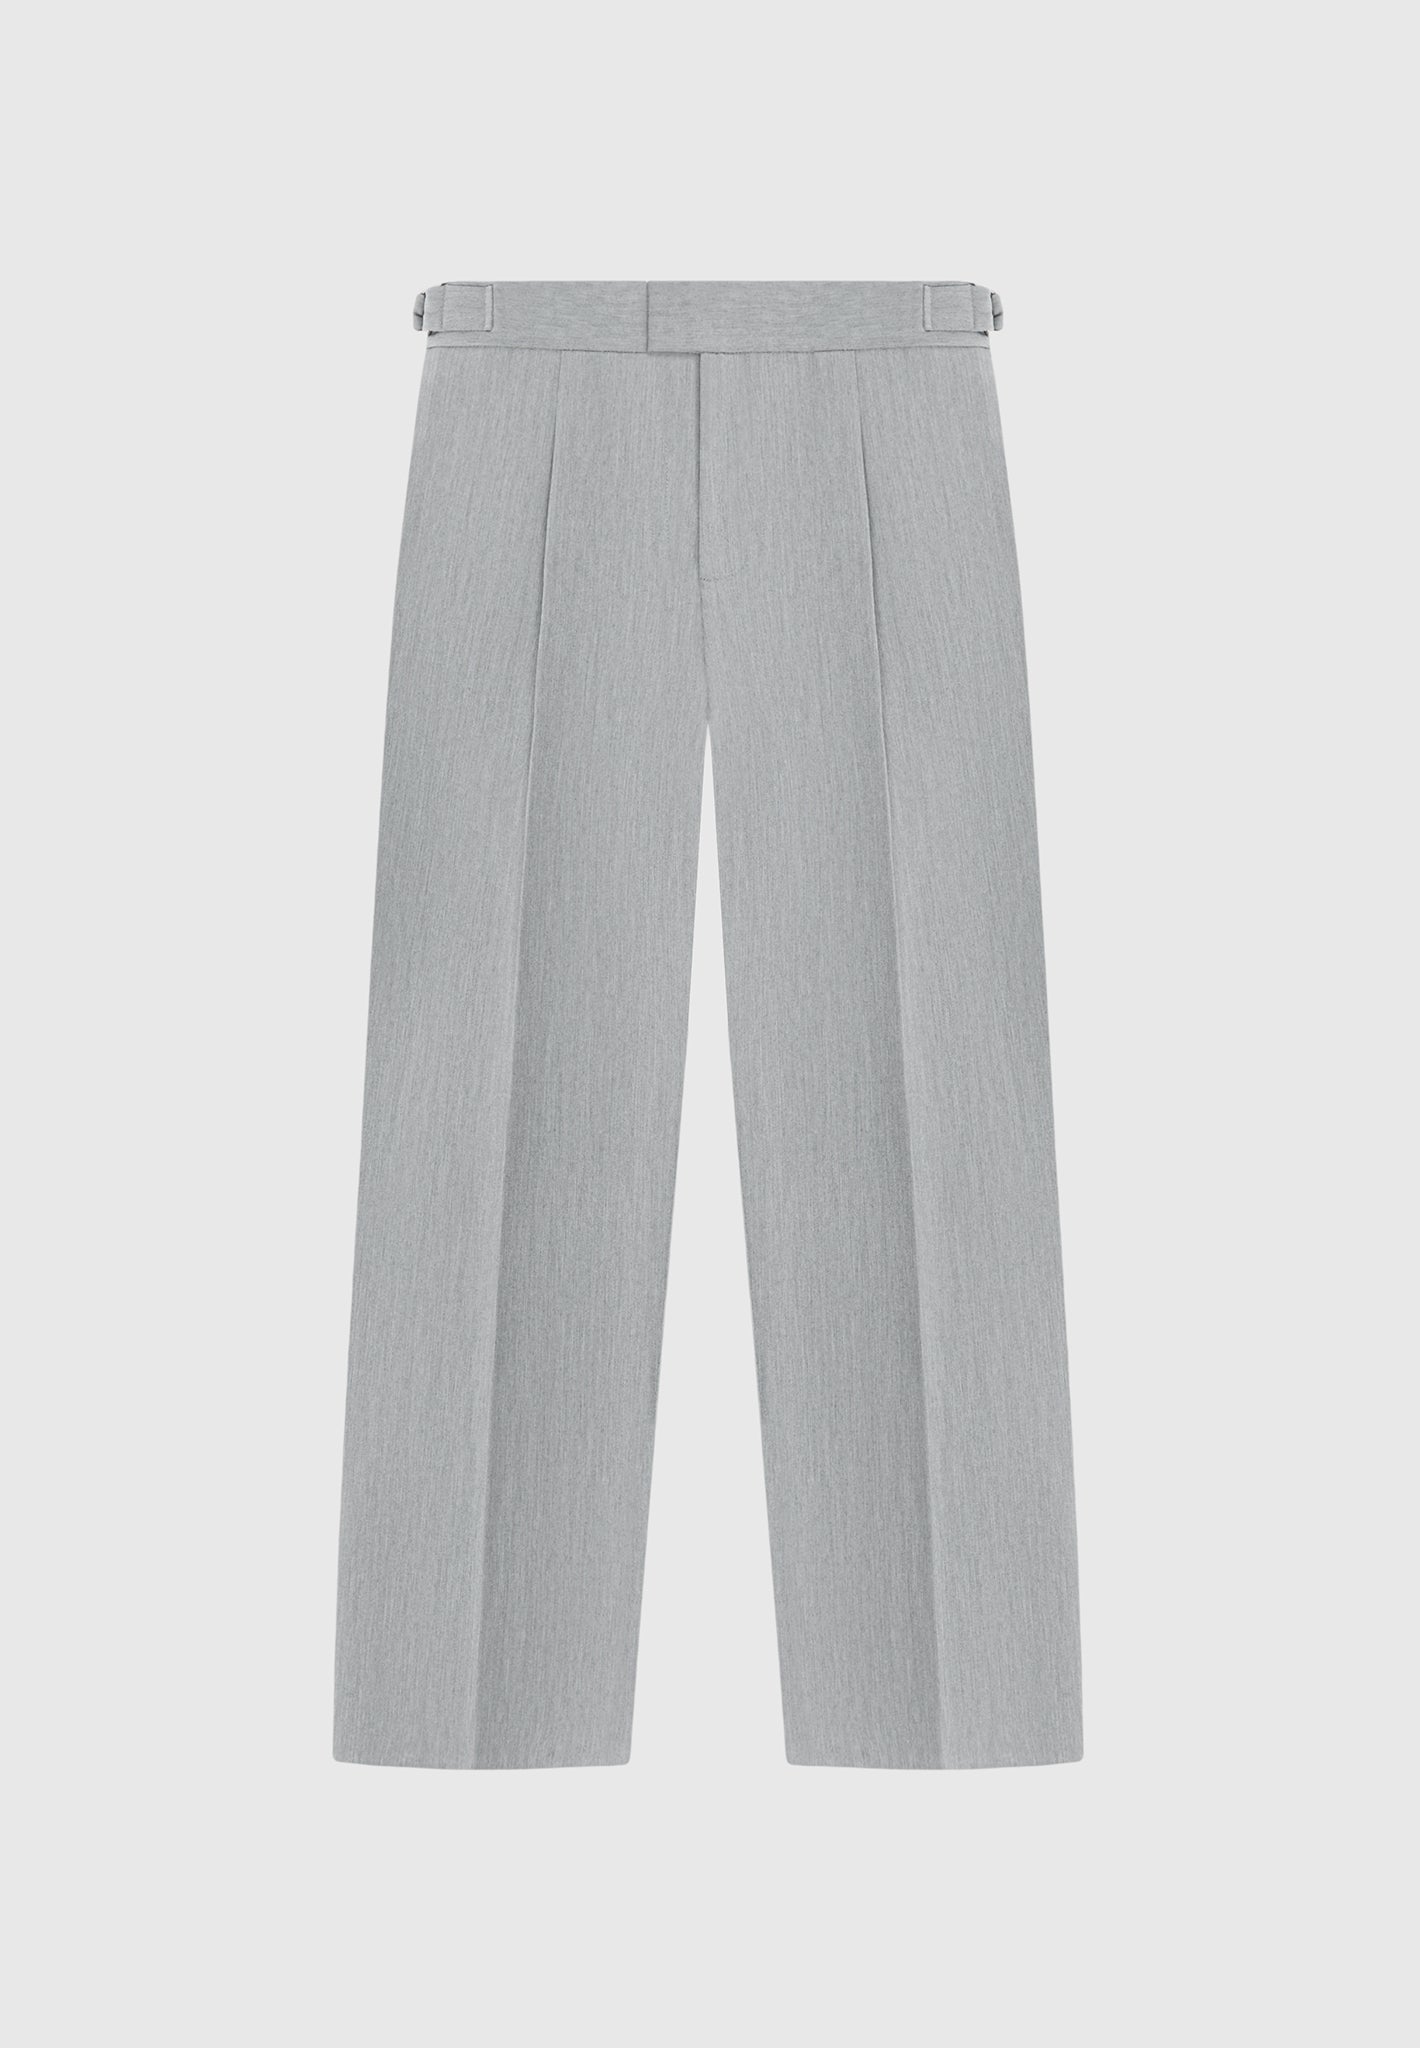 Pantalon sur mesure plissé - gris clair